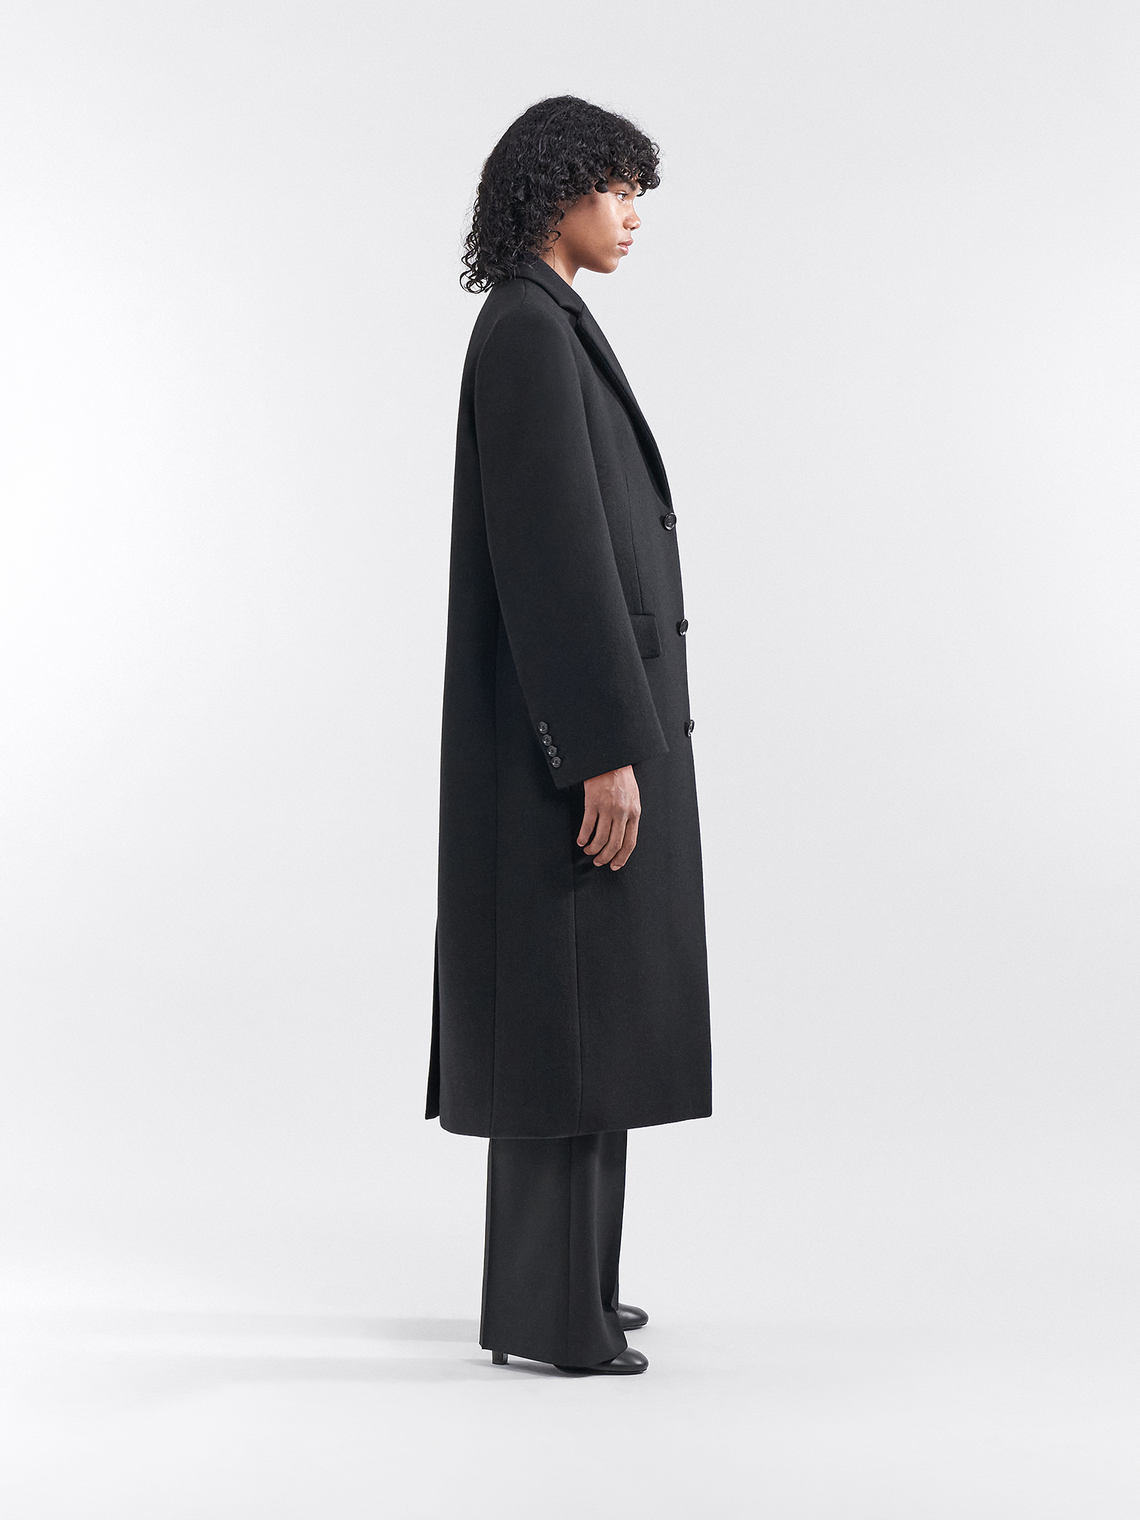 Averie coat by Filippa K in black